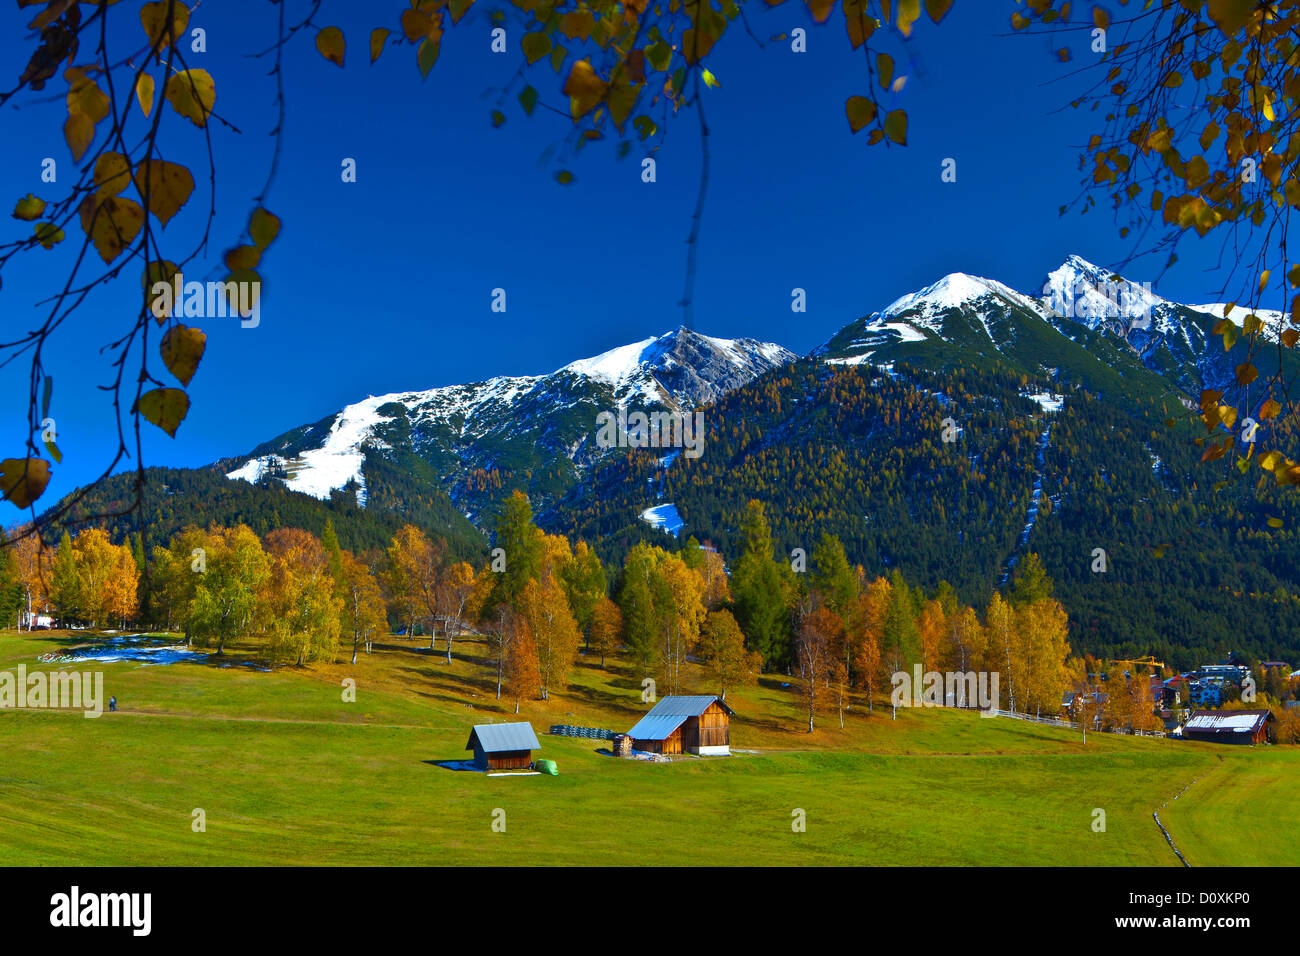 Austria, Europe, Tyrol, Tirol, Seefeld, autumn, Reither Spitzer, Reither, point, peak, Karwendel, snow, birches, Yellow, blue, w Stock Photo